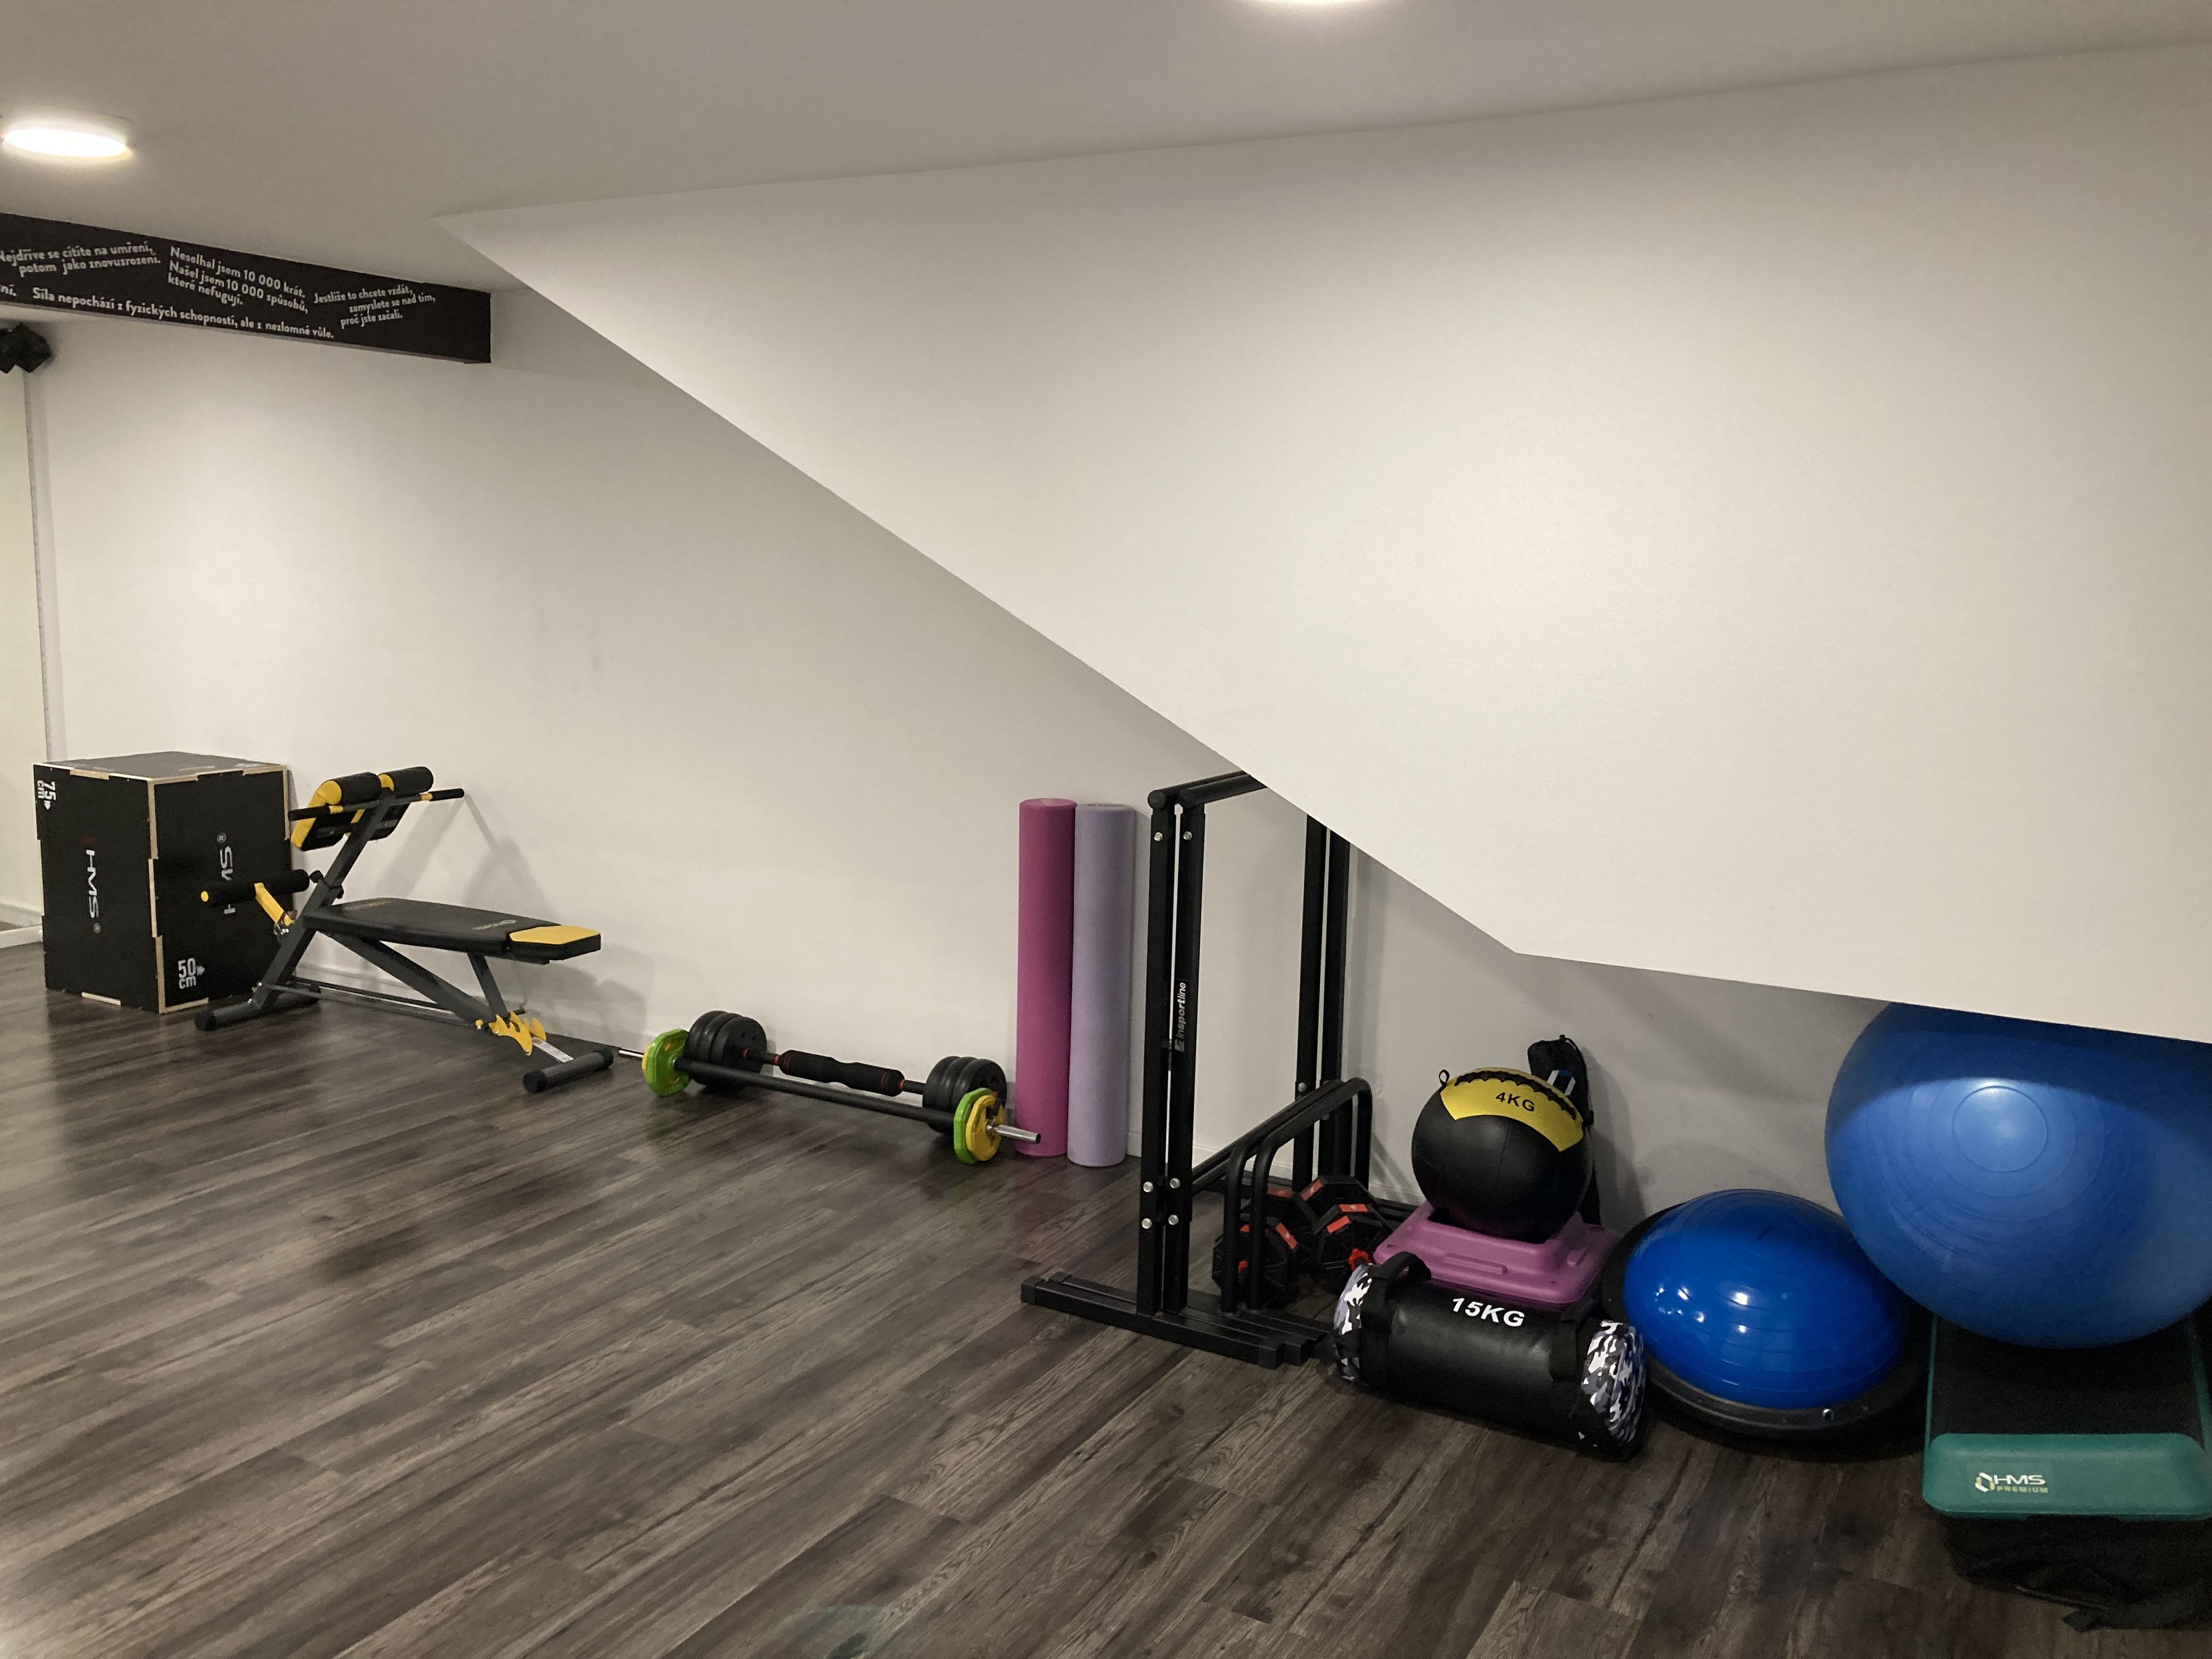 sál2 vybavení | Fitness sál2 vybavení